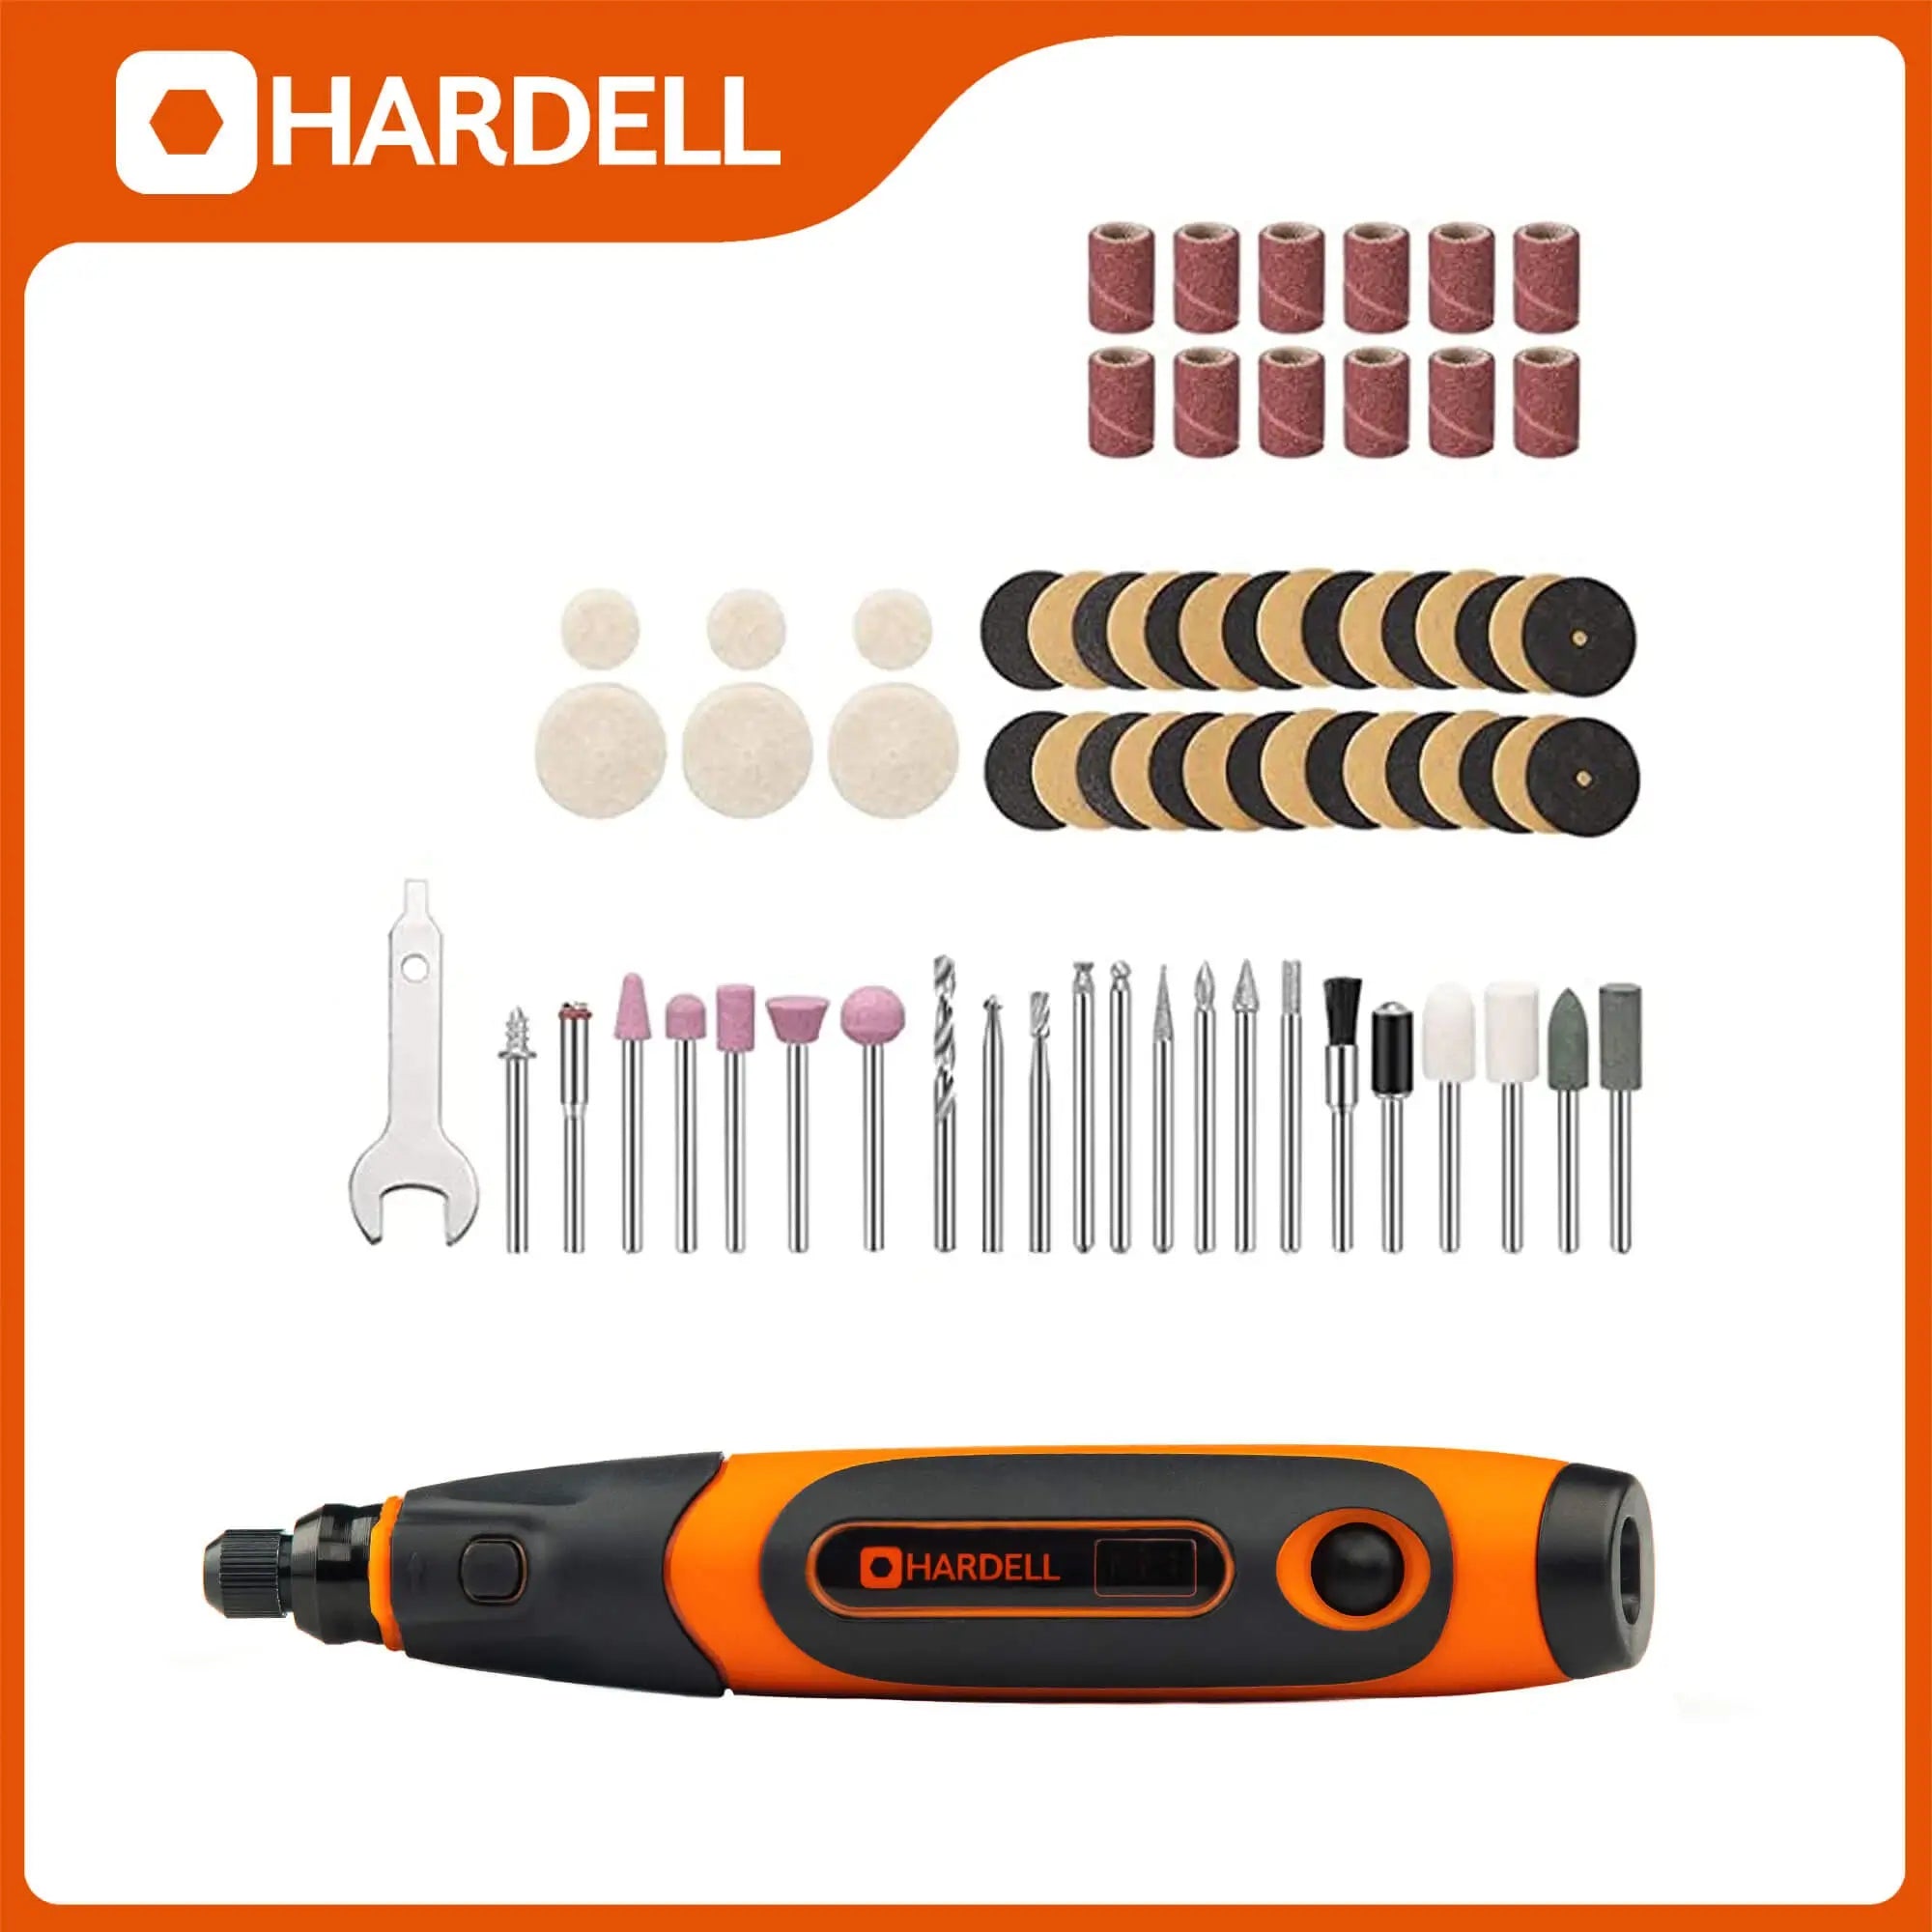 Hardell_2210_4V_Mini_Cordless_Rotary_Tool_02